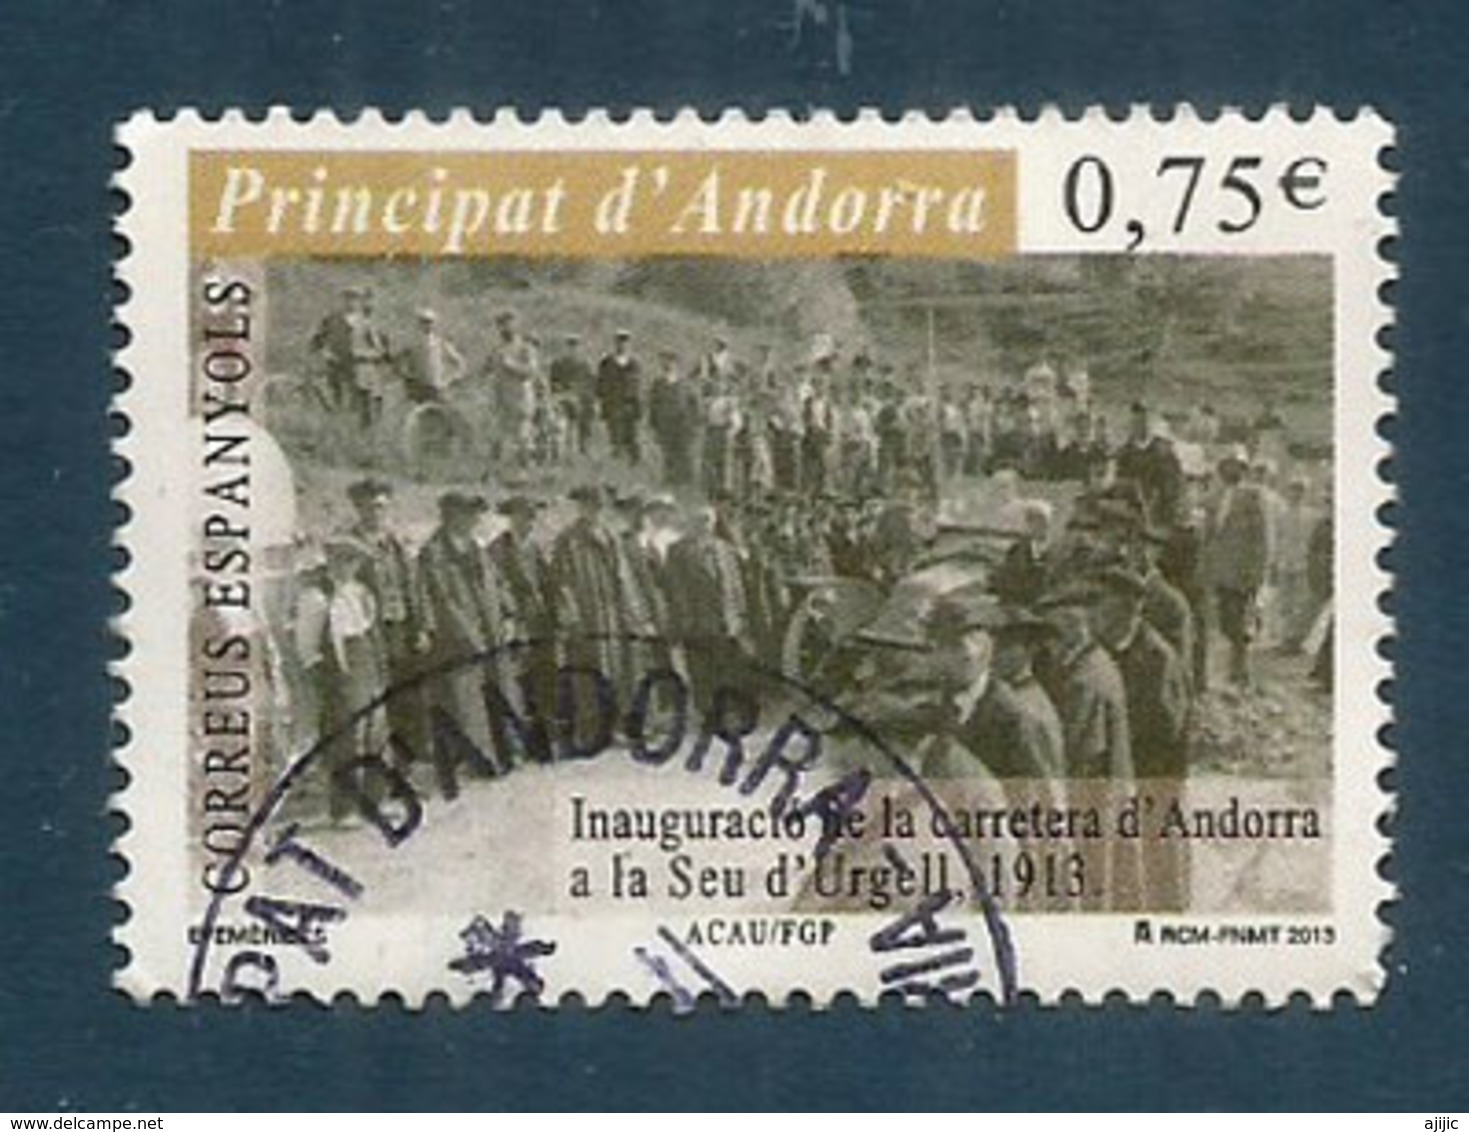 Première Route D'accès D'Andorre En 1913, Vers L'Espagne, Un Timbre Oblitéré, 1 ère Qualité, Année 2013.AND.ESP - Used Stamps